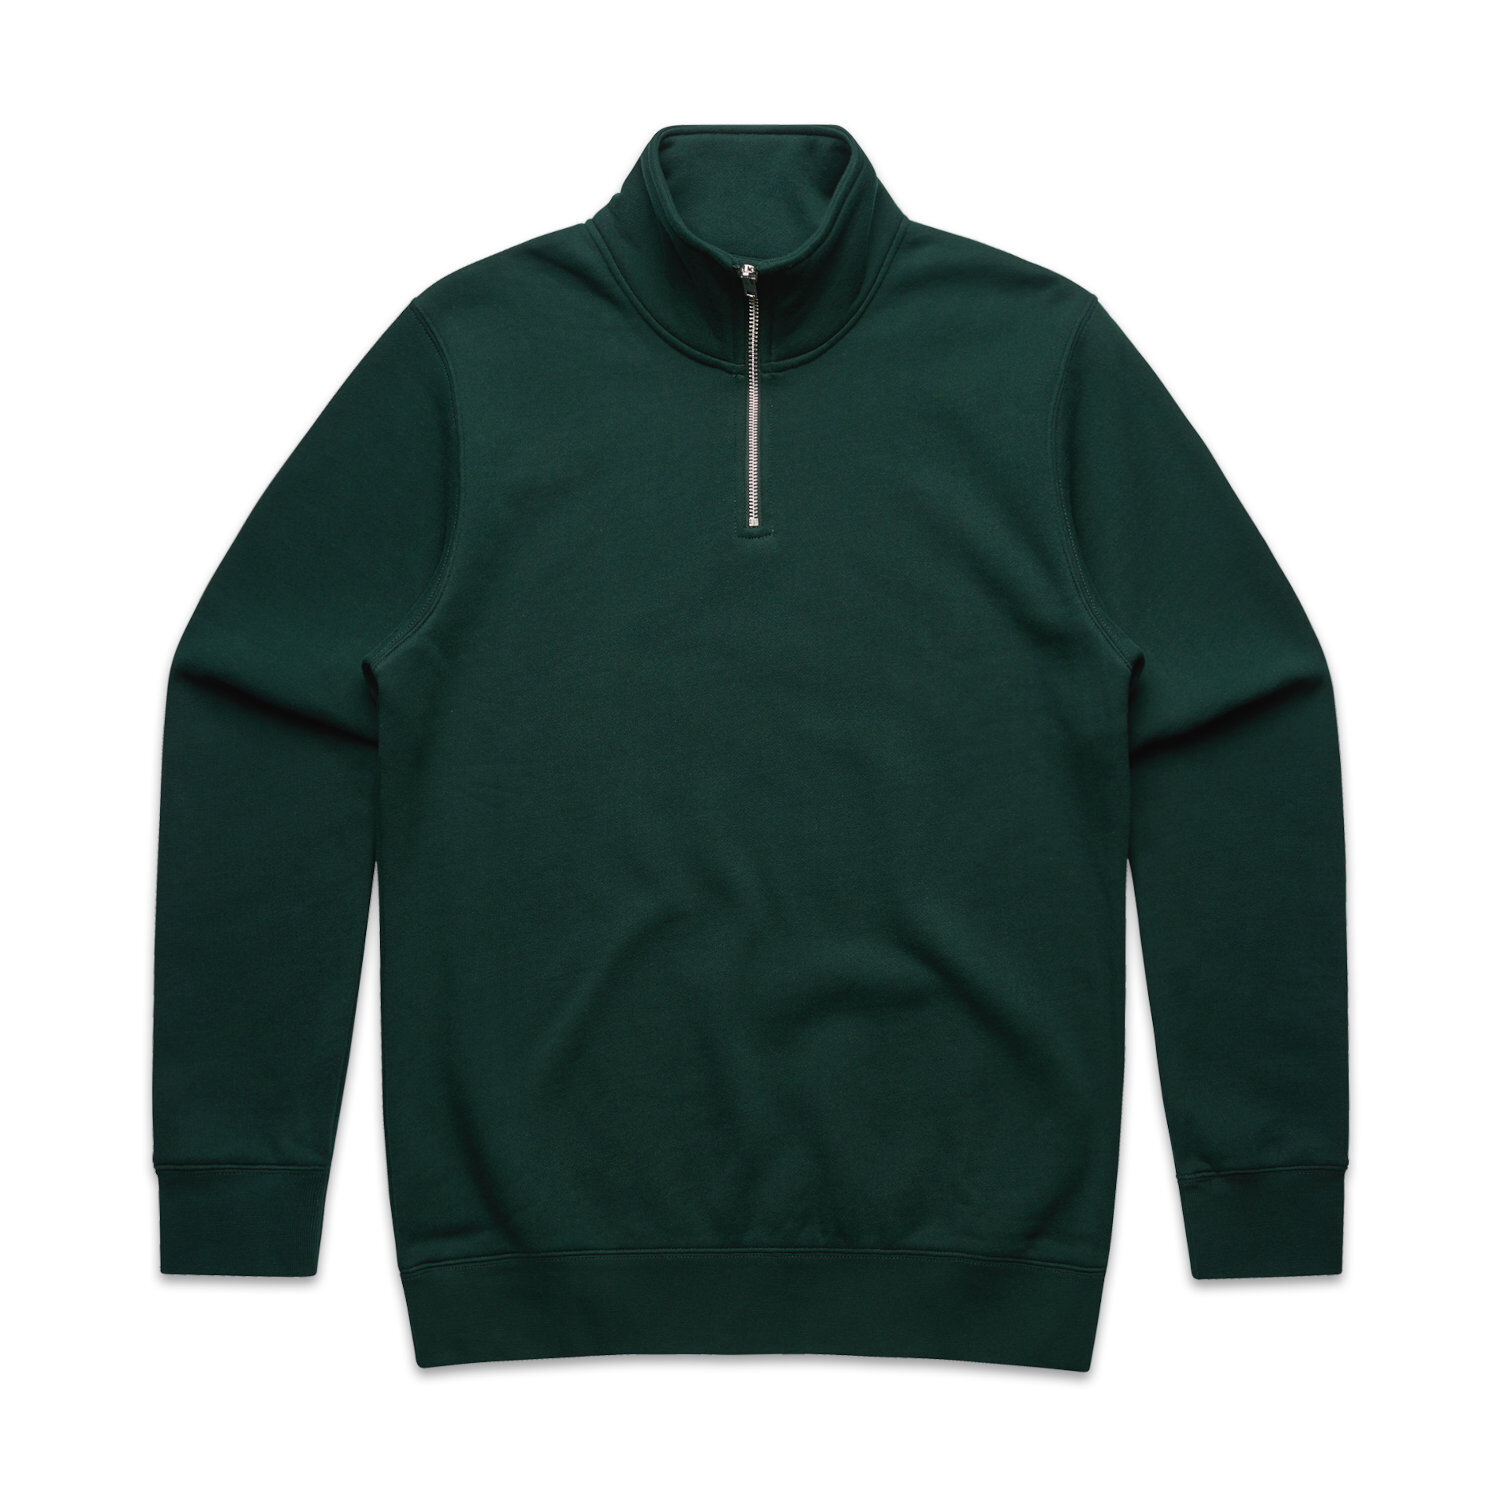 AS Colour Men's Half Zip Crew Sweater (pine green)